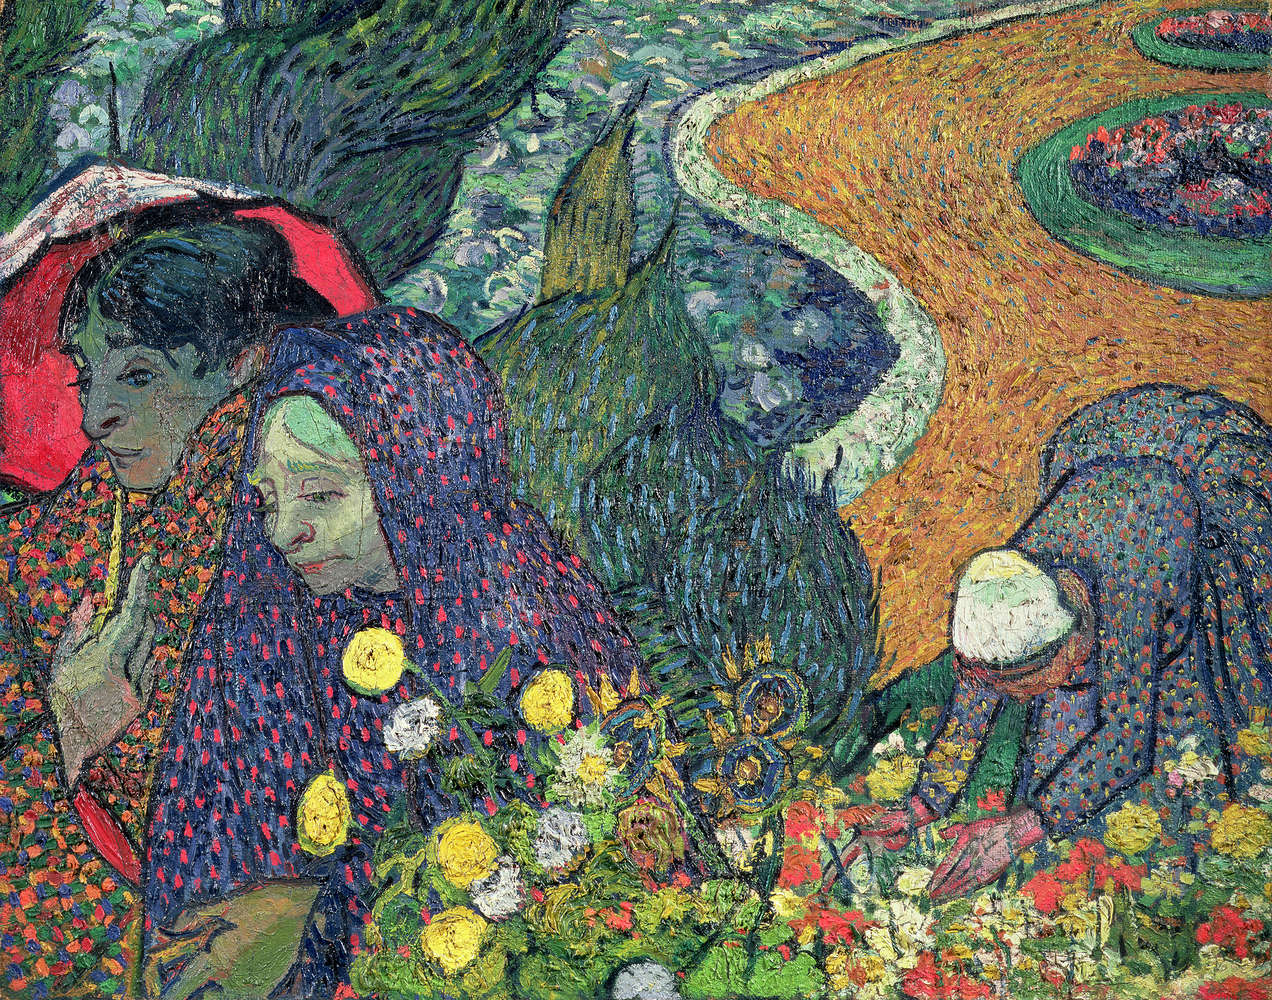             Muurschildering "Wandeling Arles" van Vincent van Gogh
        